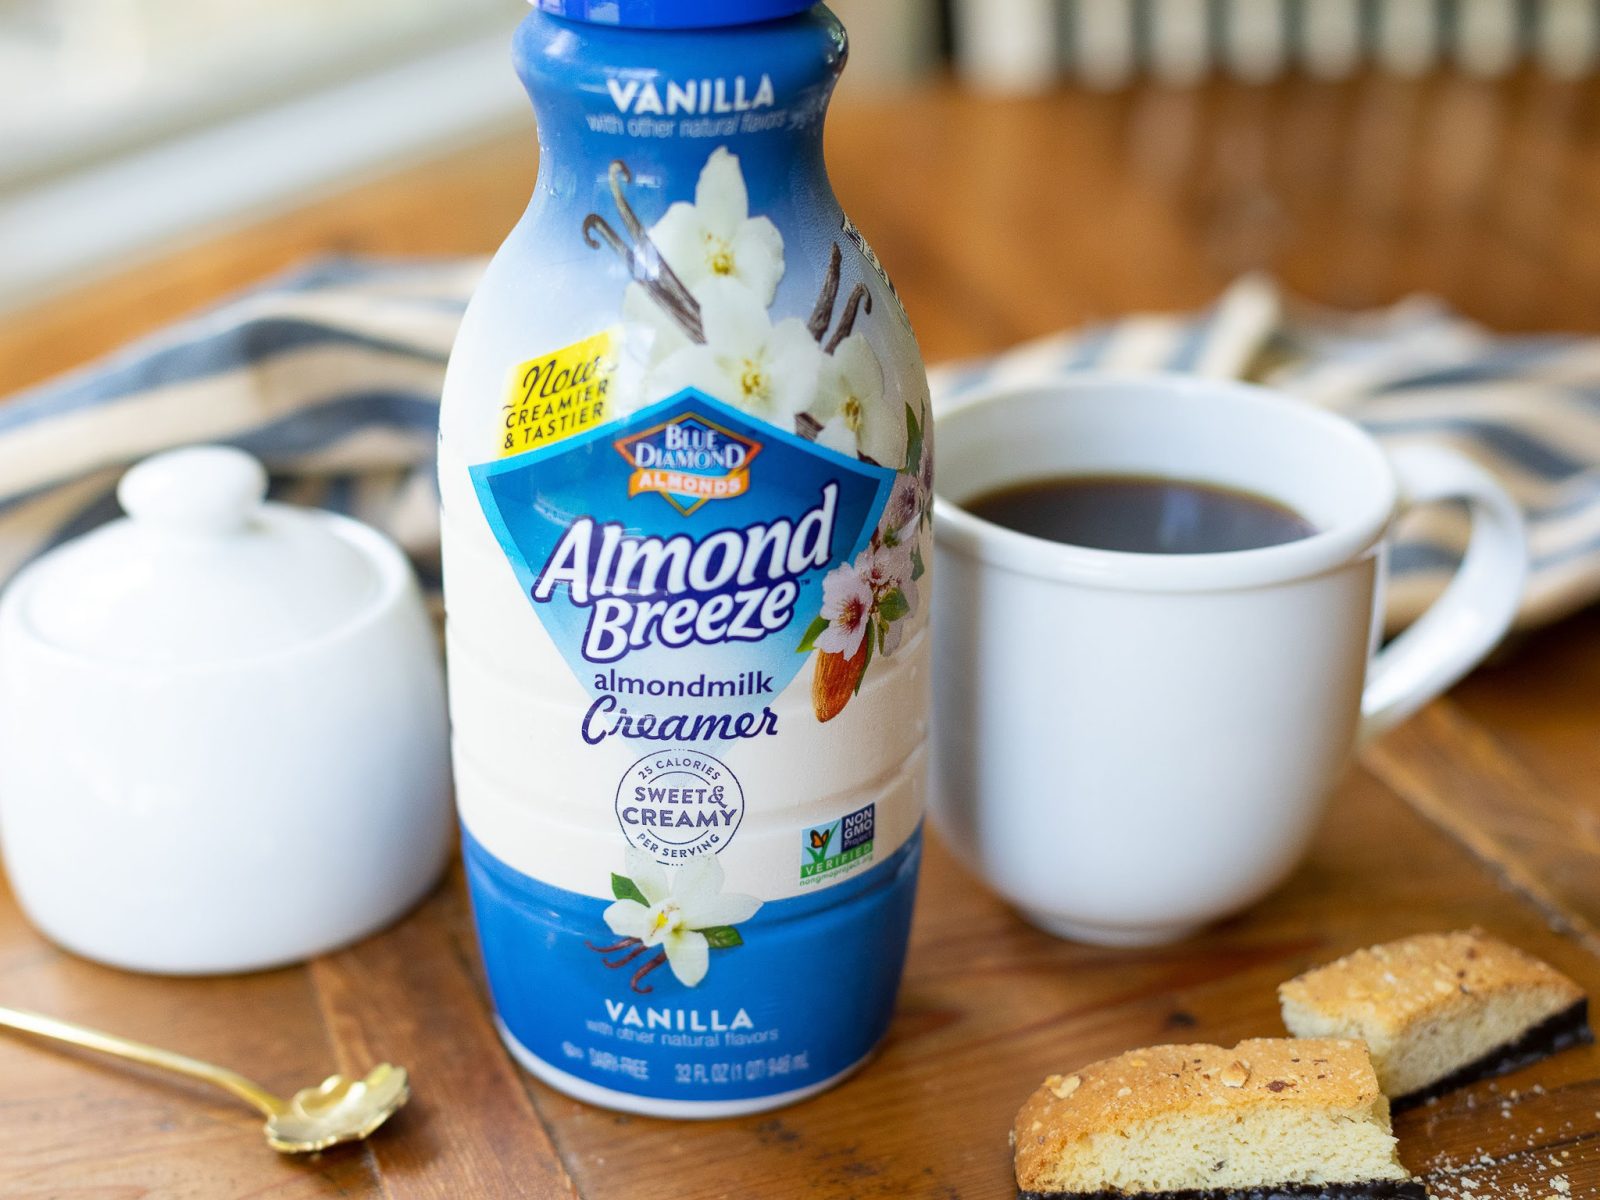 Almond Breeze Almondmilk Creamer As Low As $2.49 At Kroger